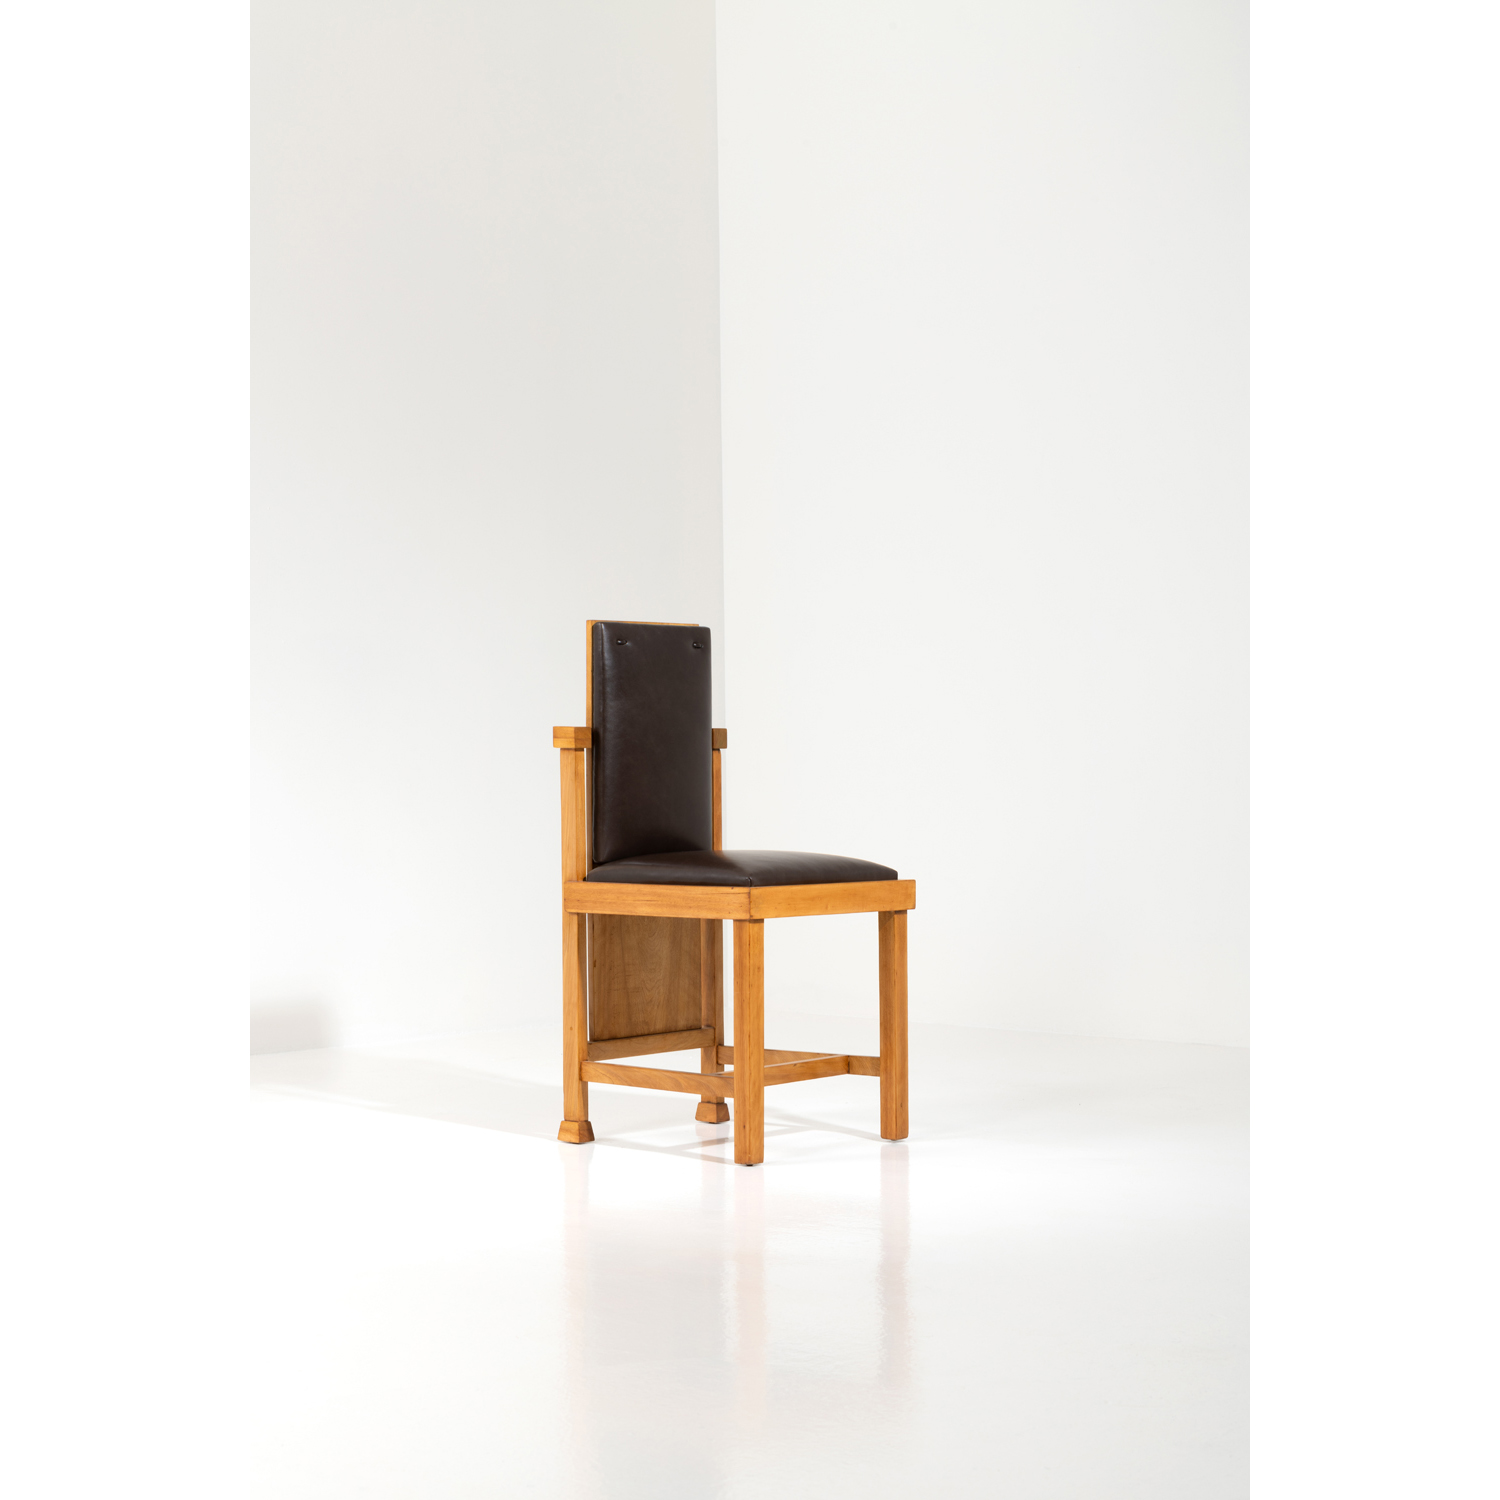 Frank Lloyd Wright (1867-1959) High back chair